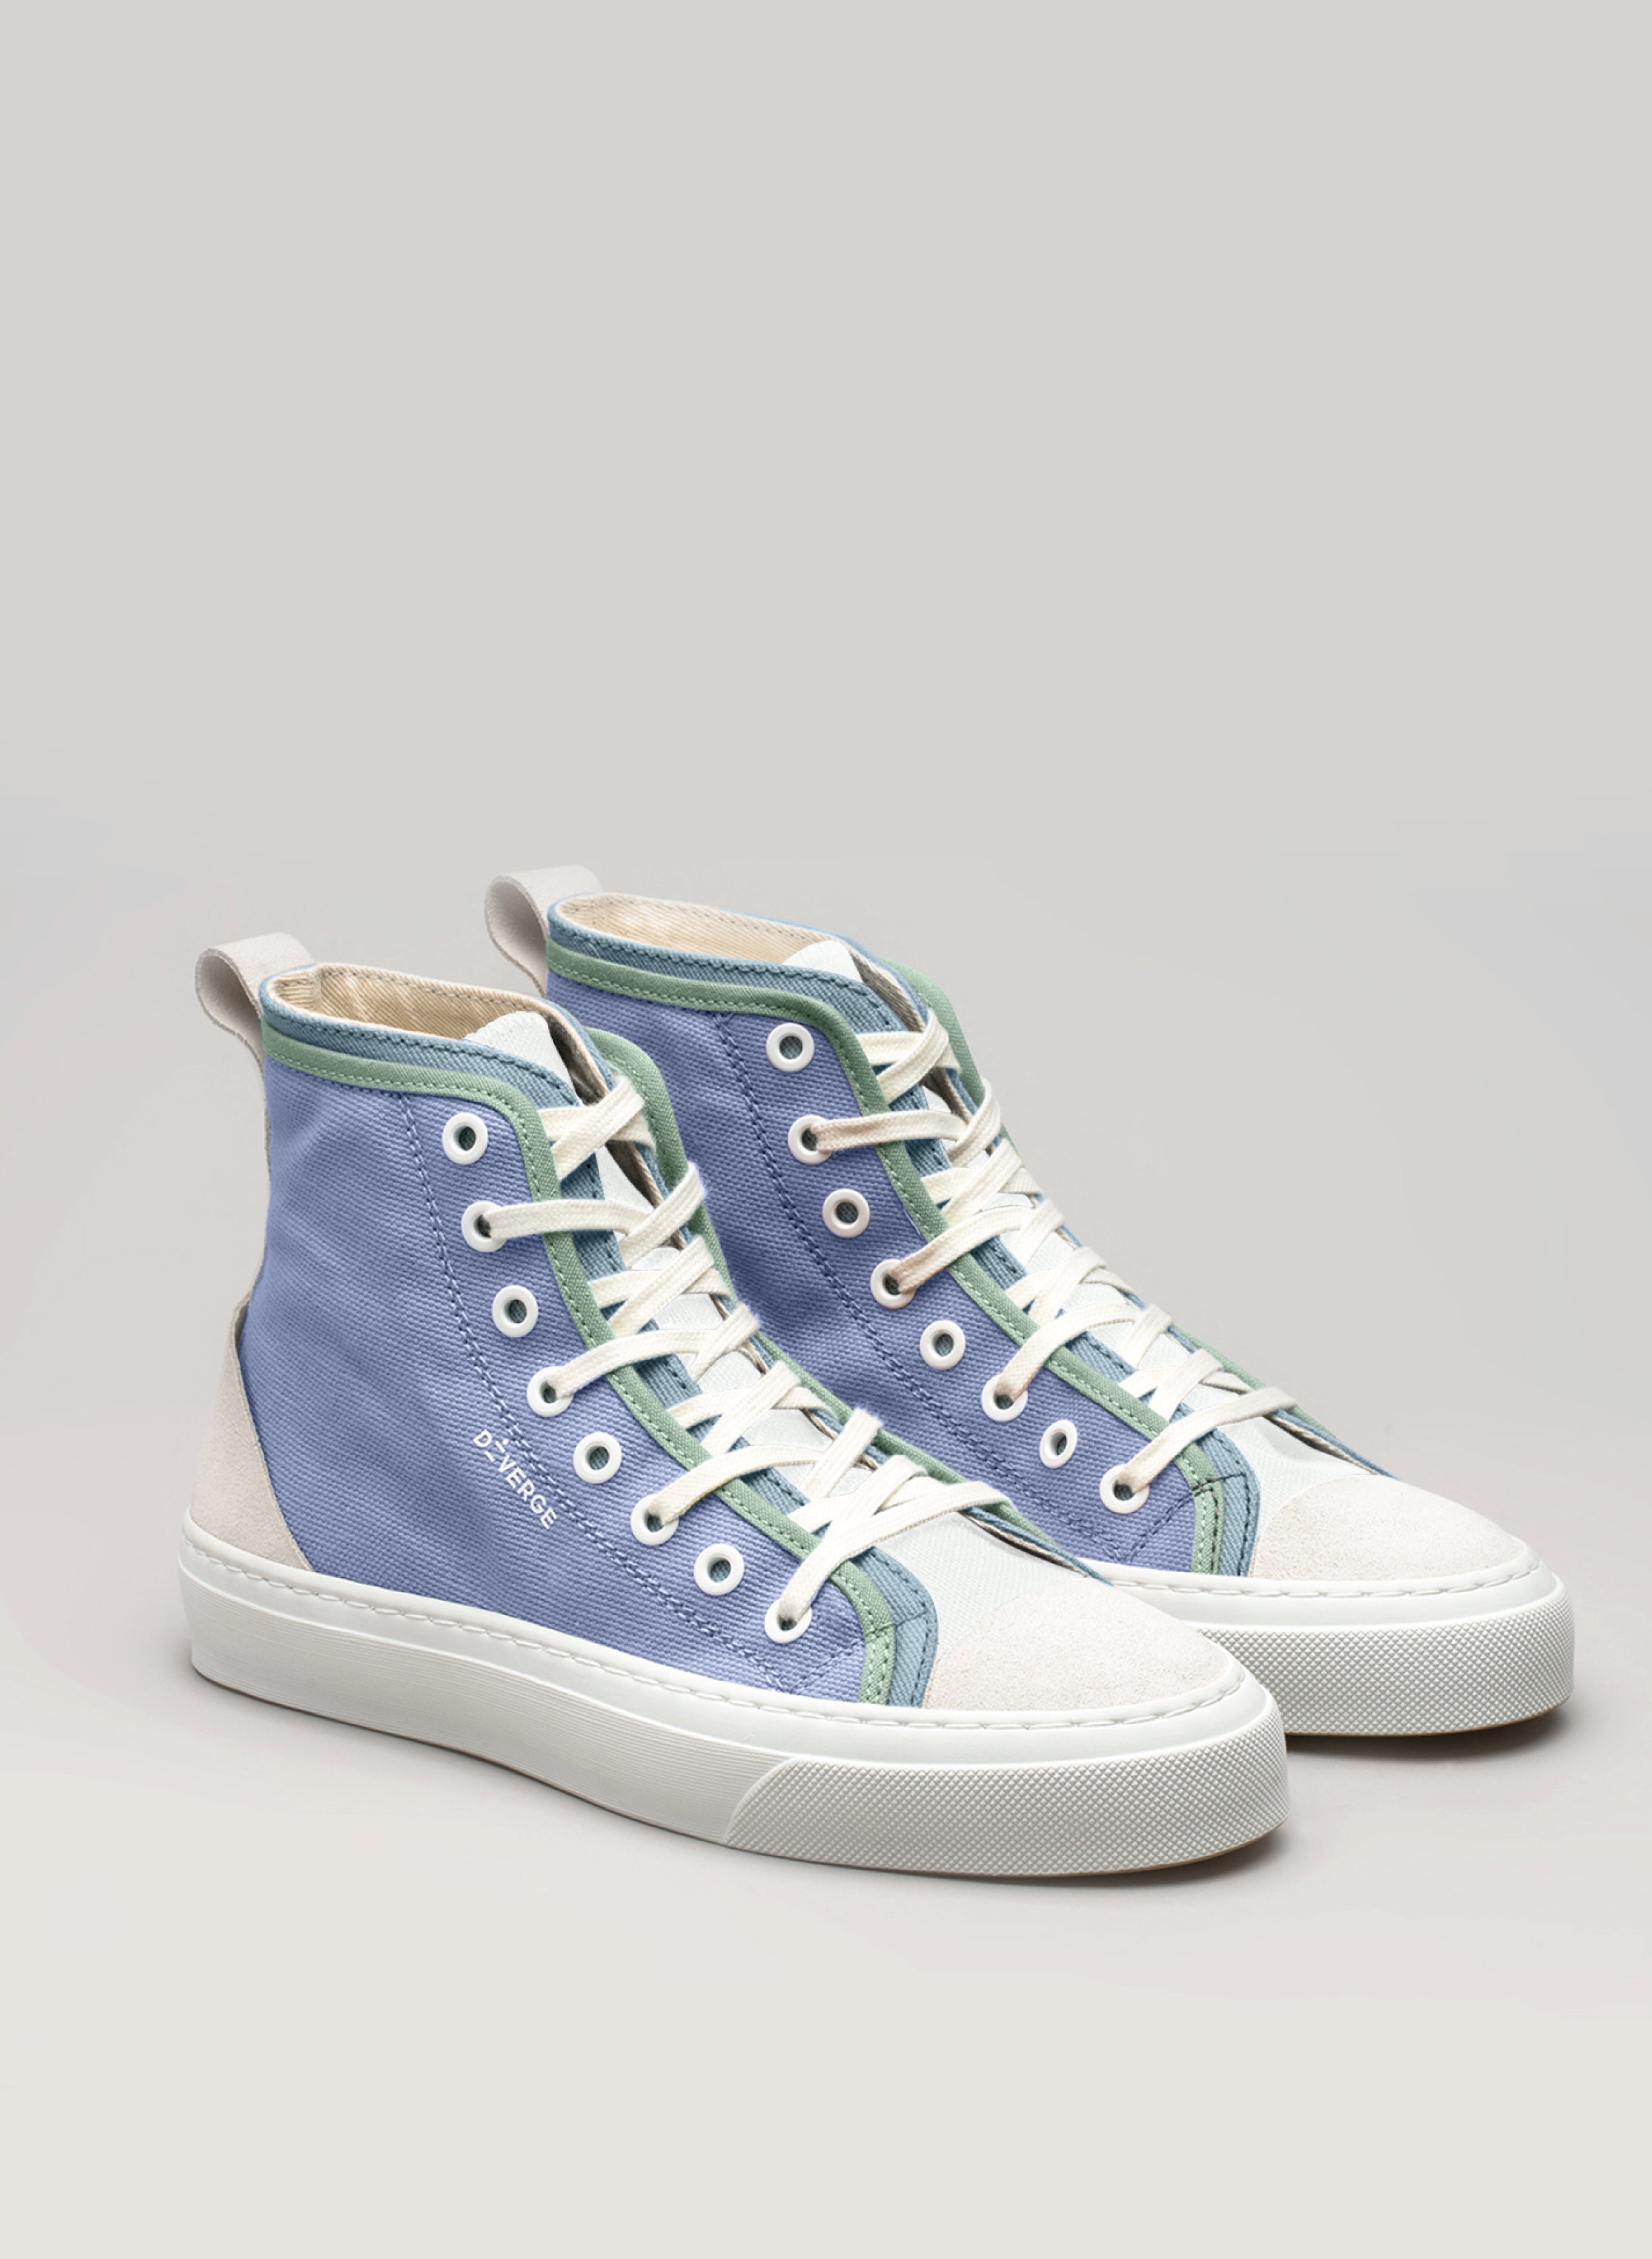 Diverge sneakers  blu e verde con lacci bianchi, un paio di scarpe personalizzate.